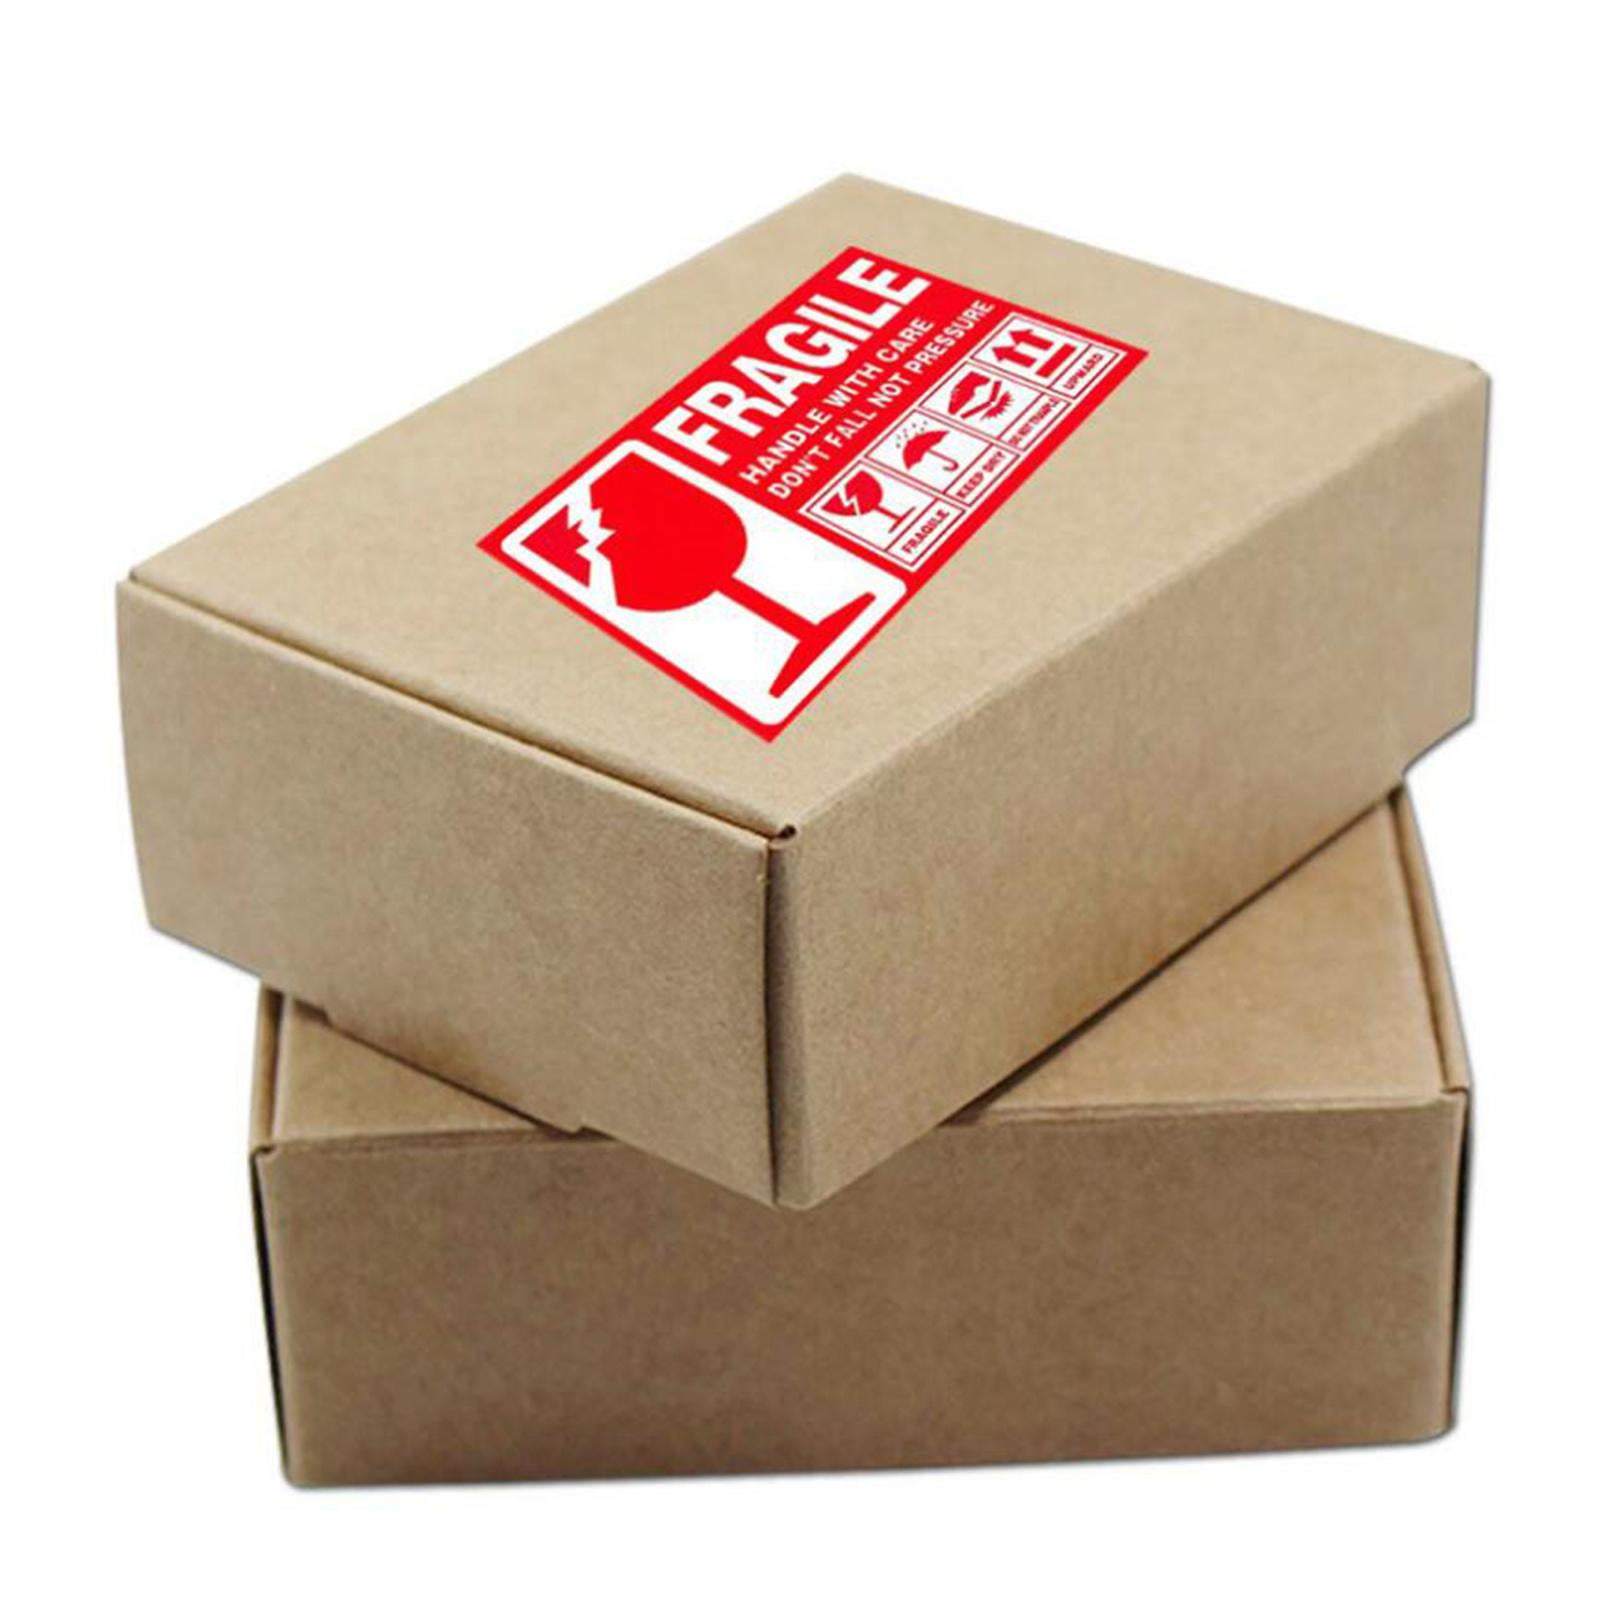 manico autoadesivo con etichette per la cura 300 adesivi di avvertimento rosso fragile per la spedizione sicura di merci Excart 